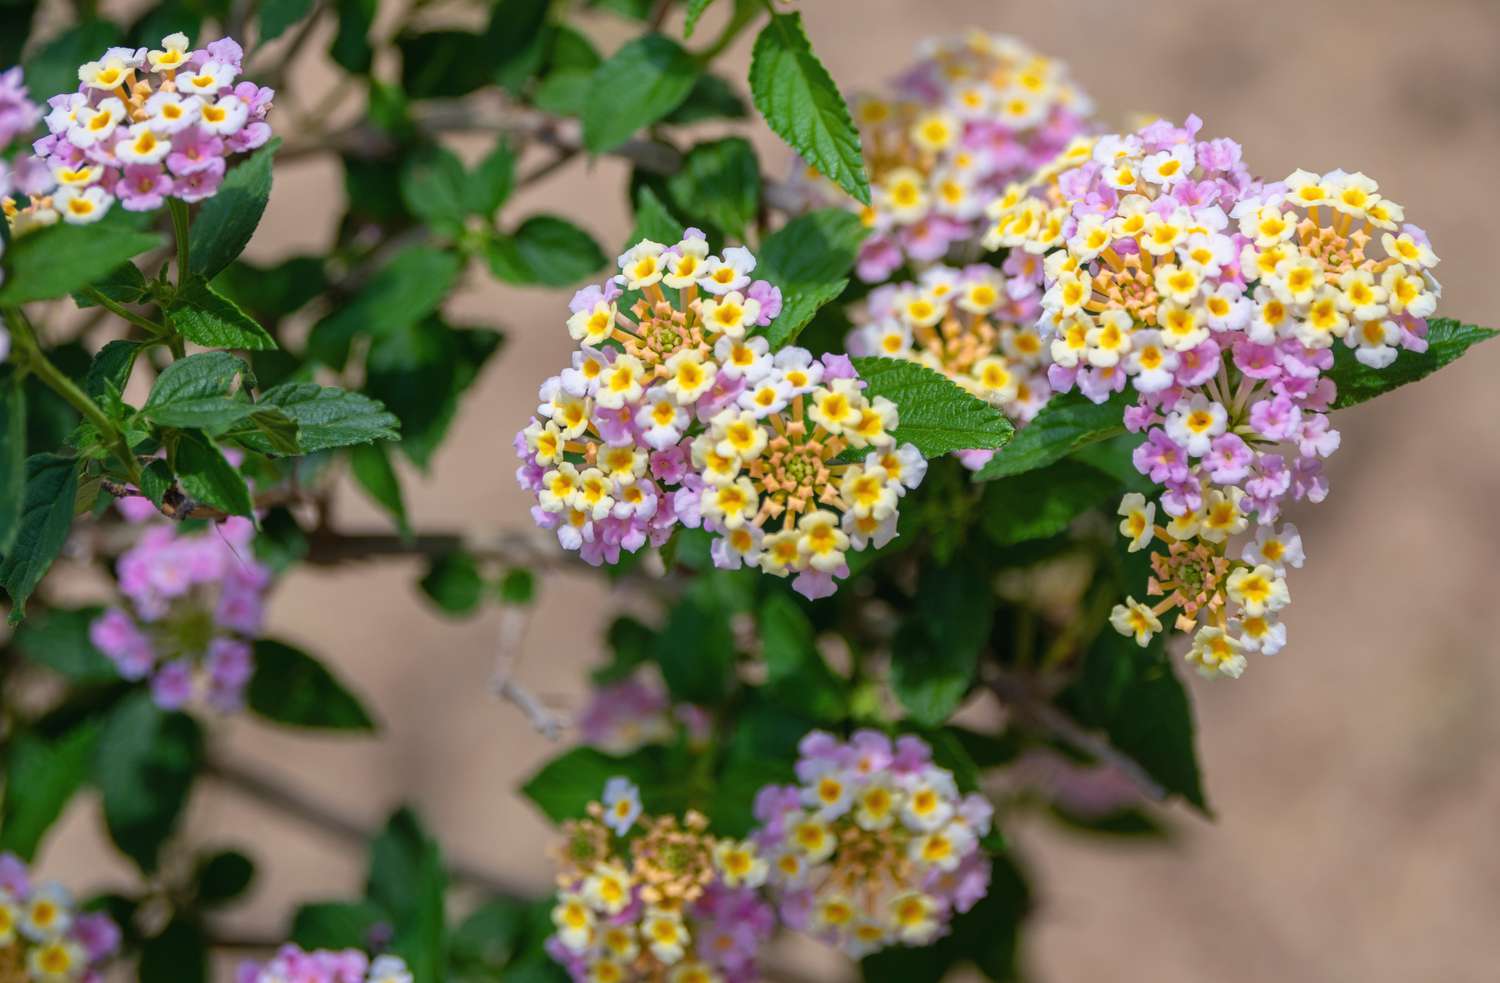 Lantana-Pflanzen mit winzigen rosa und gelben Blütentrauben in Nahaufnahme